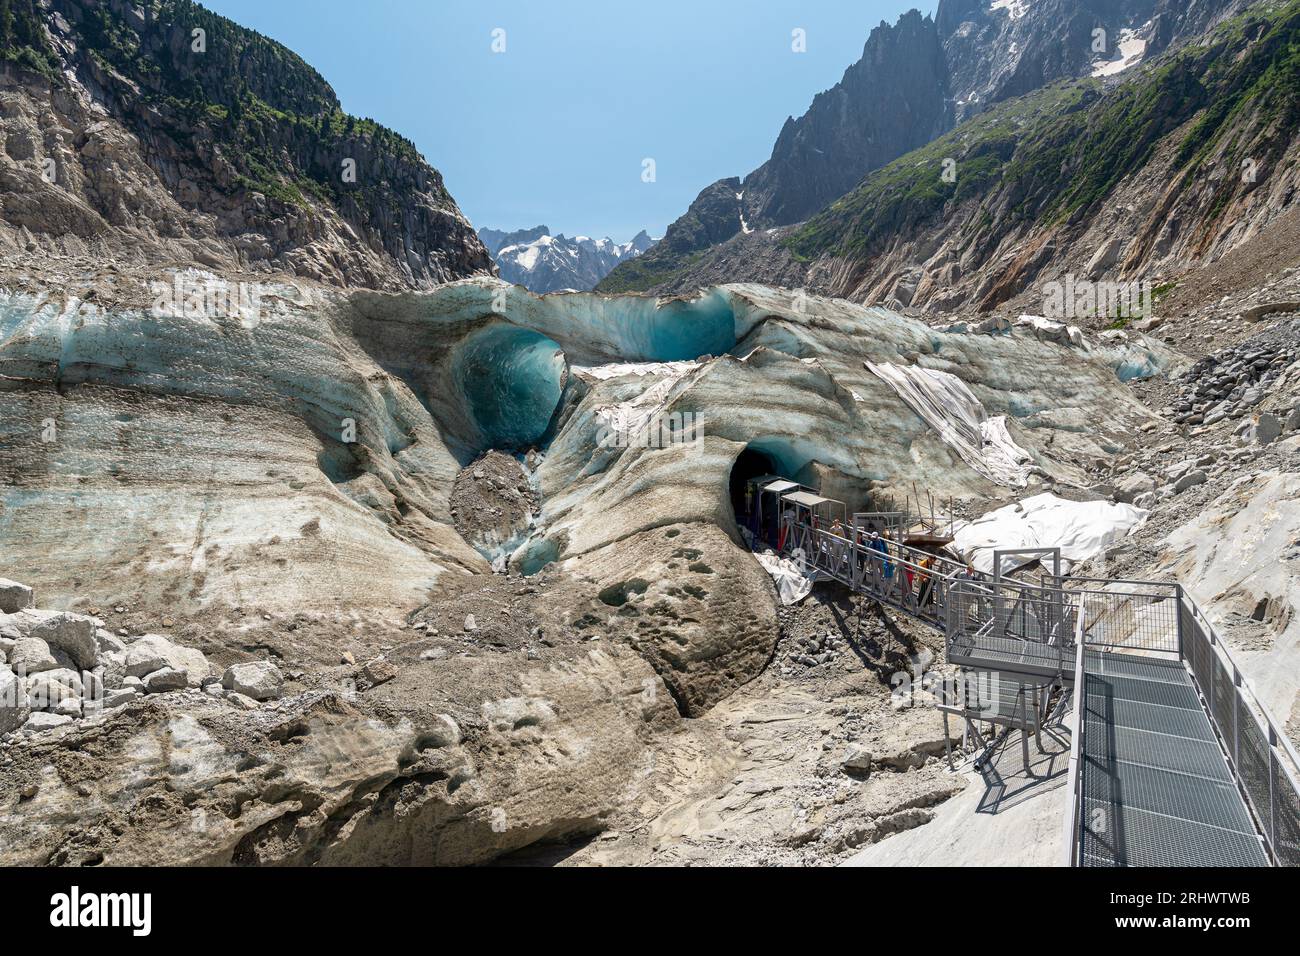 Les touristes visitant la Grotte de glace creusé dans la Mer de glace (« Mer de glace »), un glacier de vallée situé sur les pentes nord du massif du Mont blanc. Banque D'Images